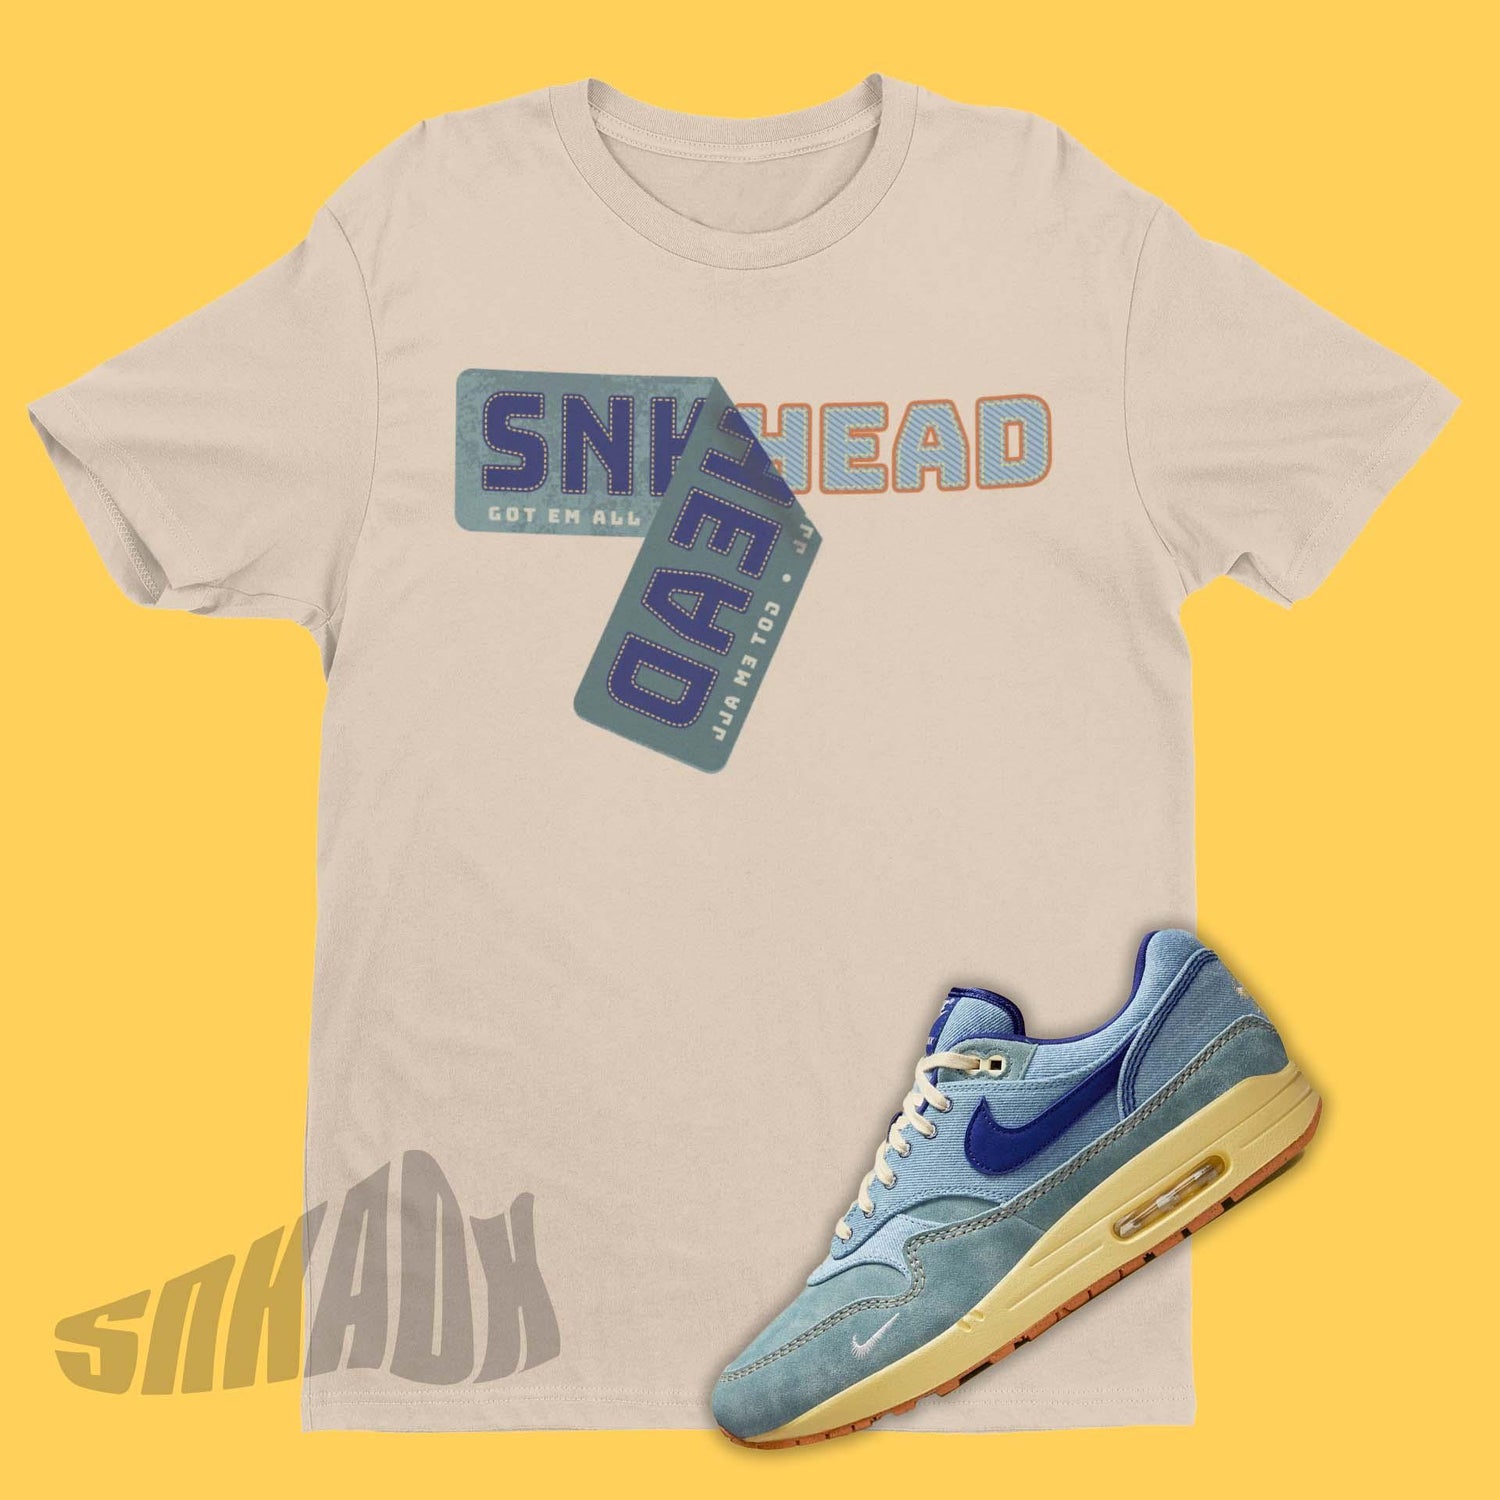 Sneakerhead Shirt To Match Nike Air Max 1 Dirty Denim